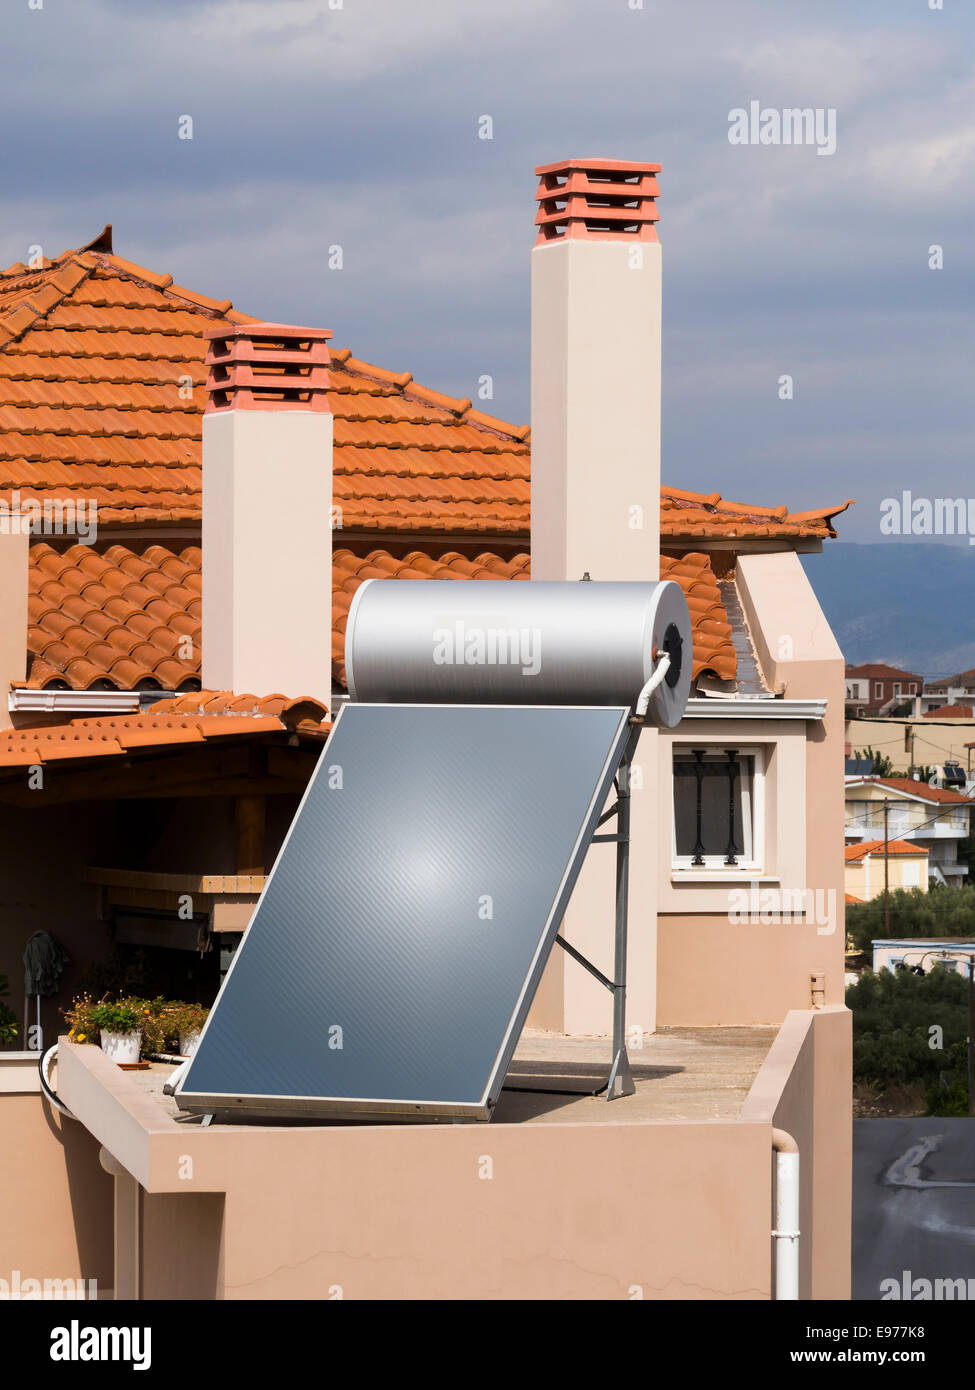 Calorifero di acqua solare sul tetto della piastrella con tetto di casa Foto Stock